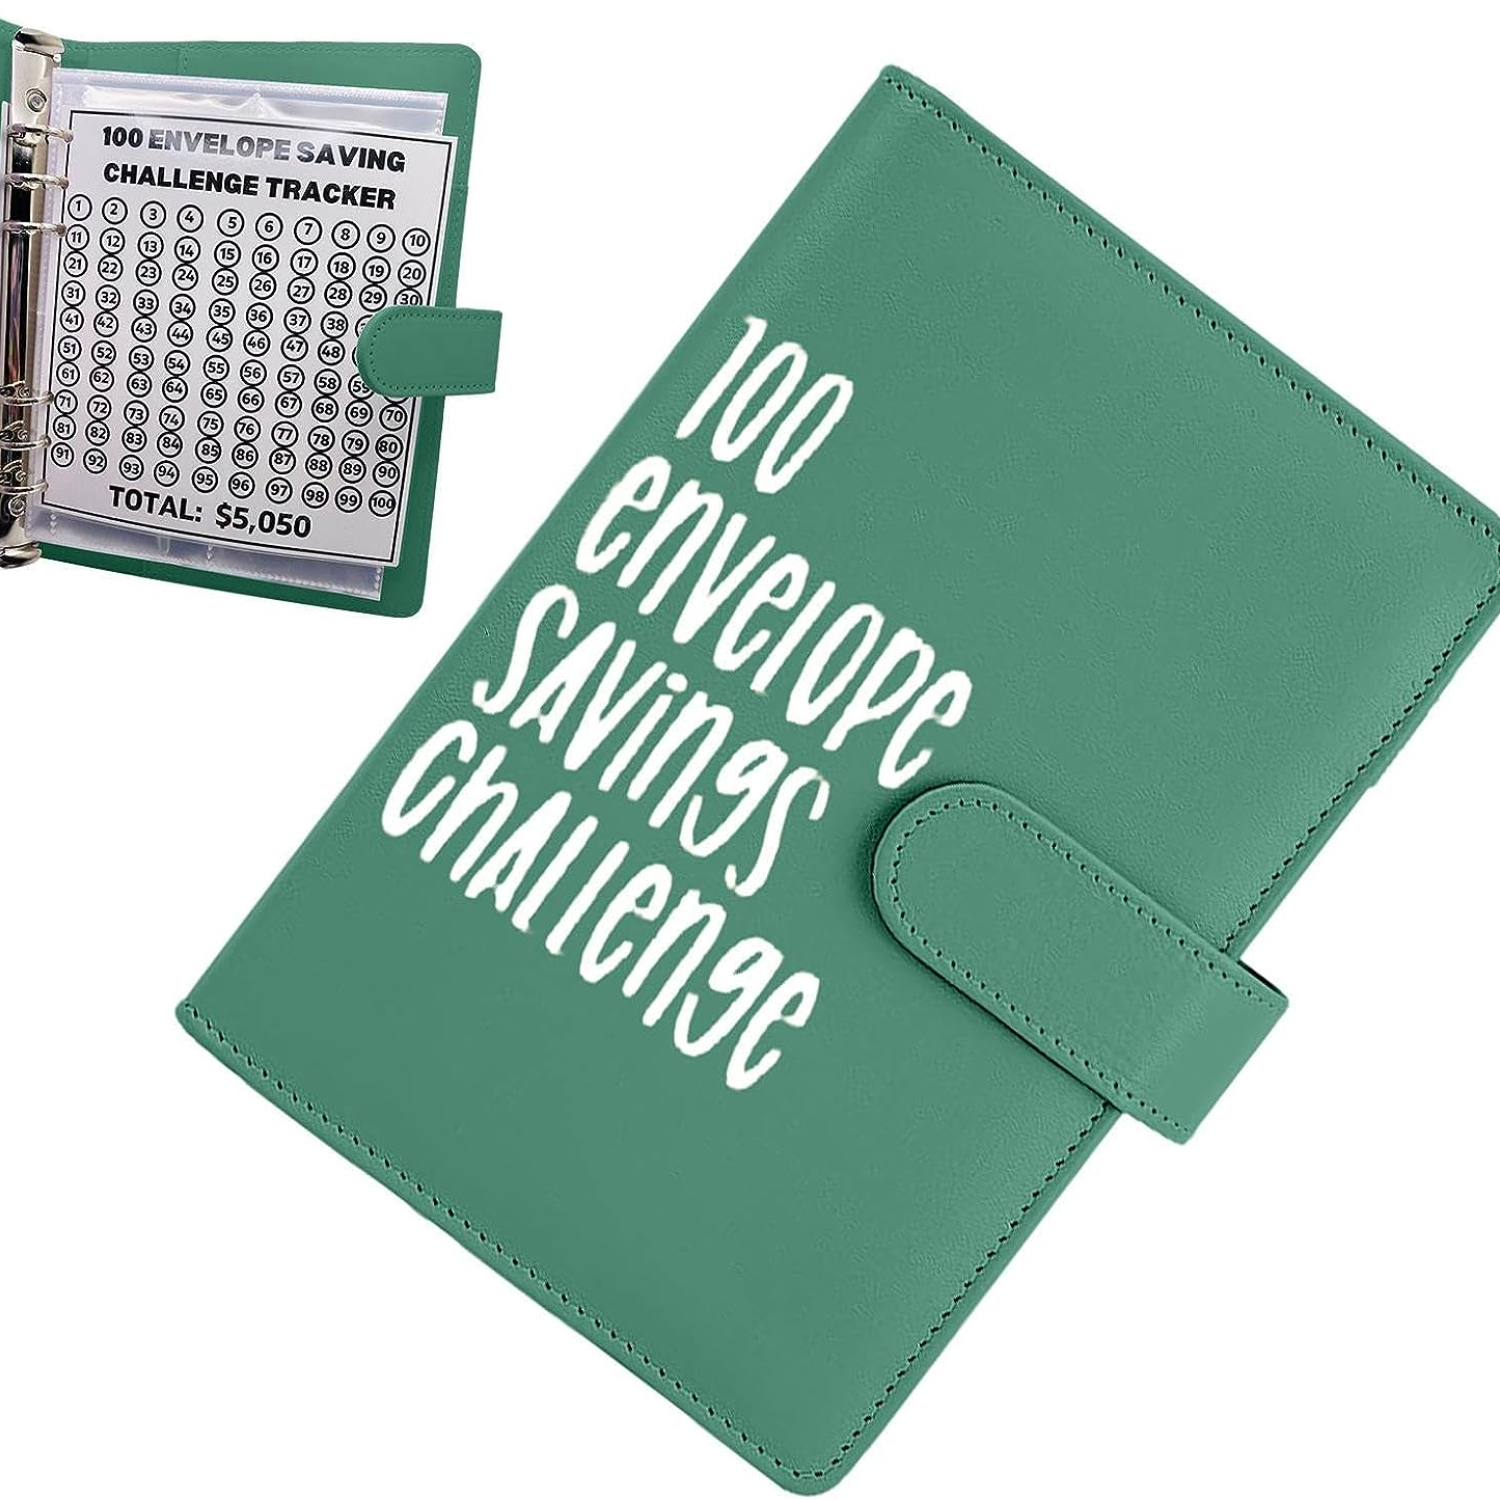 Carpeta de desafío de ahorro de dinero de 100 sobres, carpeta de desafío de  100 sobres, libro divertido y organizado para ahorrar dinero para ahorrar